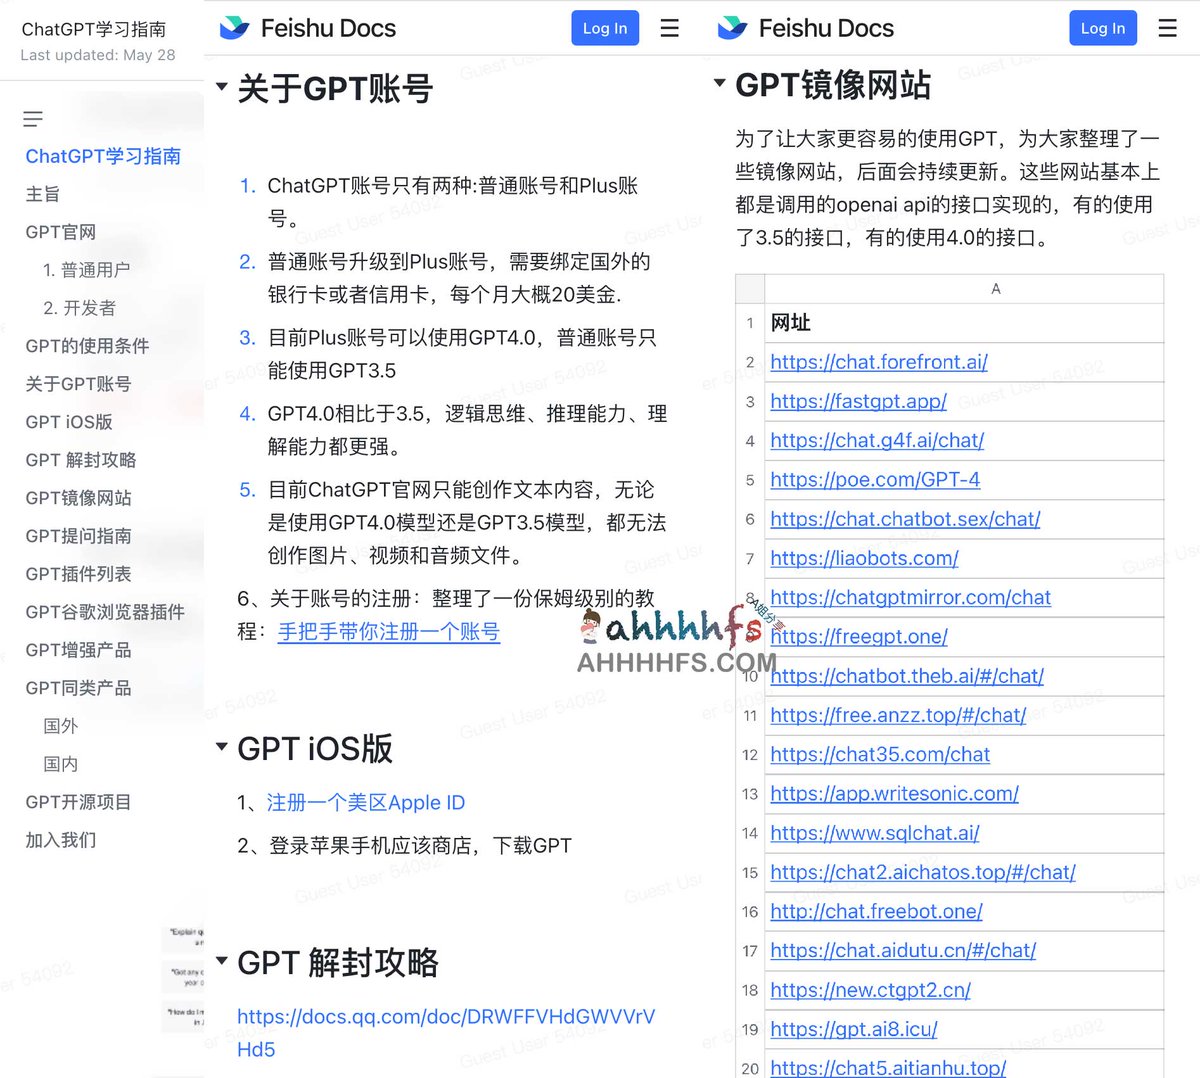 ChatGPT学习指南

包括ChatGPT的账号注册、解封

ChatGPT镜像、提问技巧、插件等等

👉ahhhhfs.com/42604/